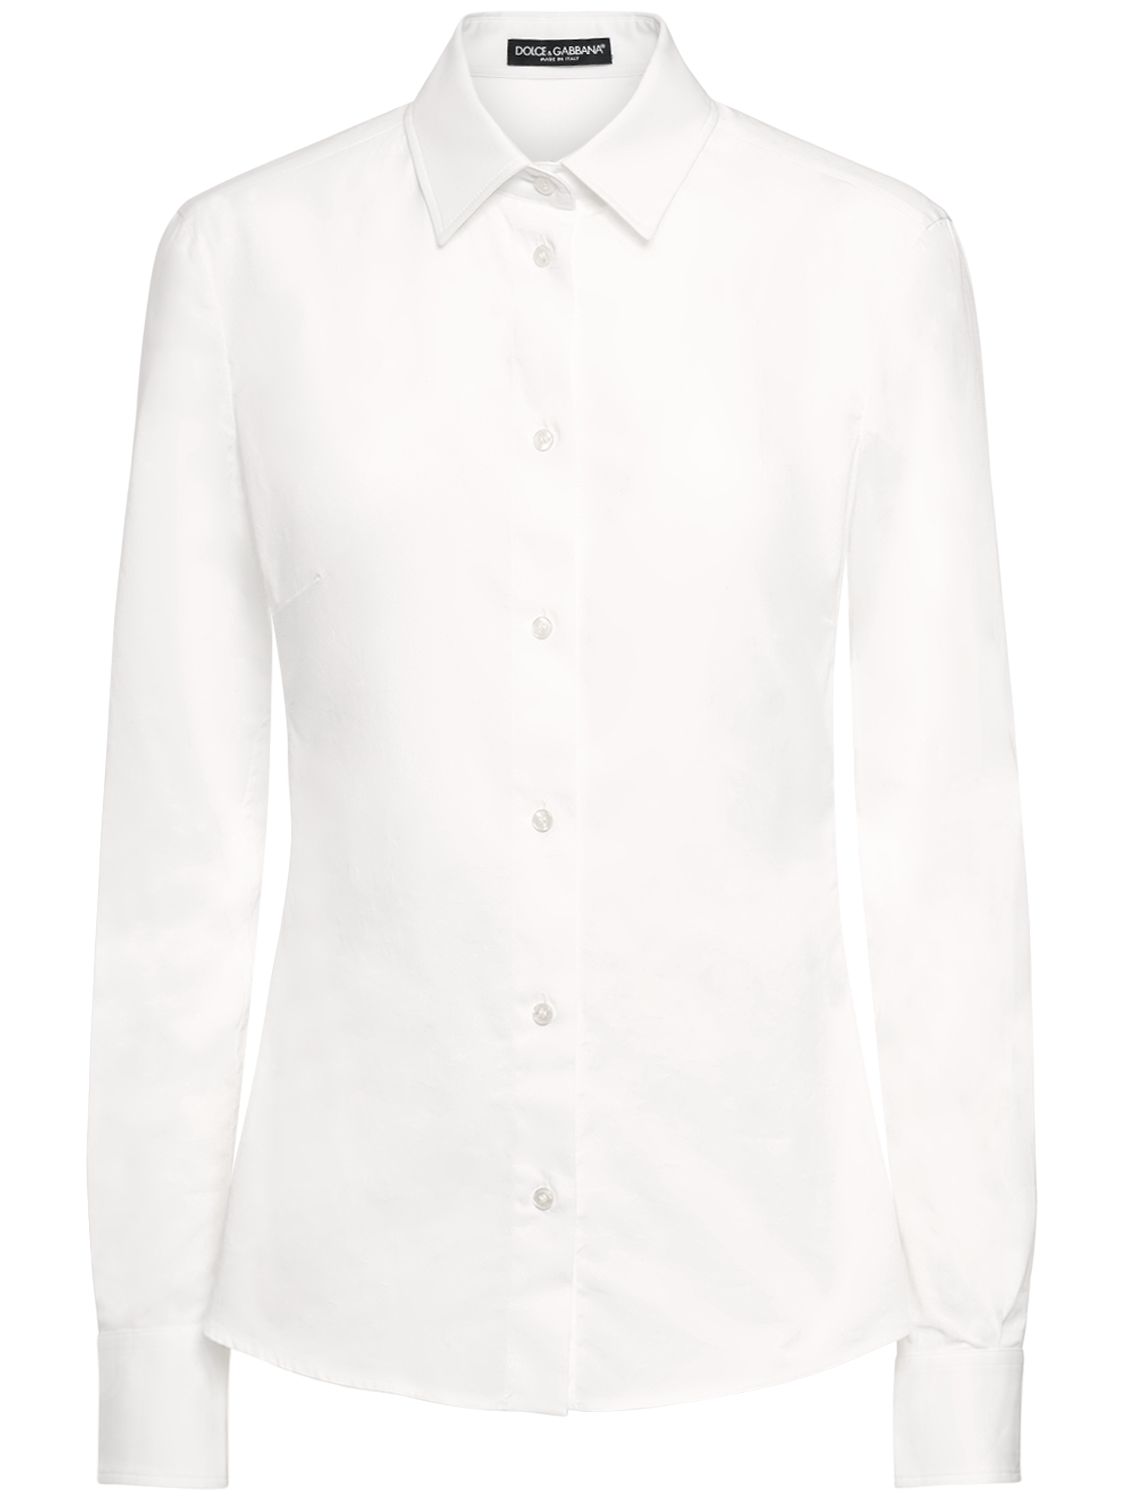 Cotton Poplin Classic Fit Shirt - DOLCE & GABBANA - Modalova